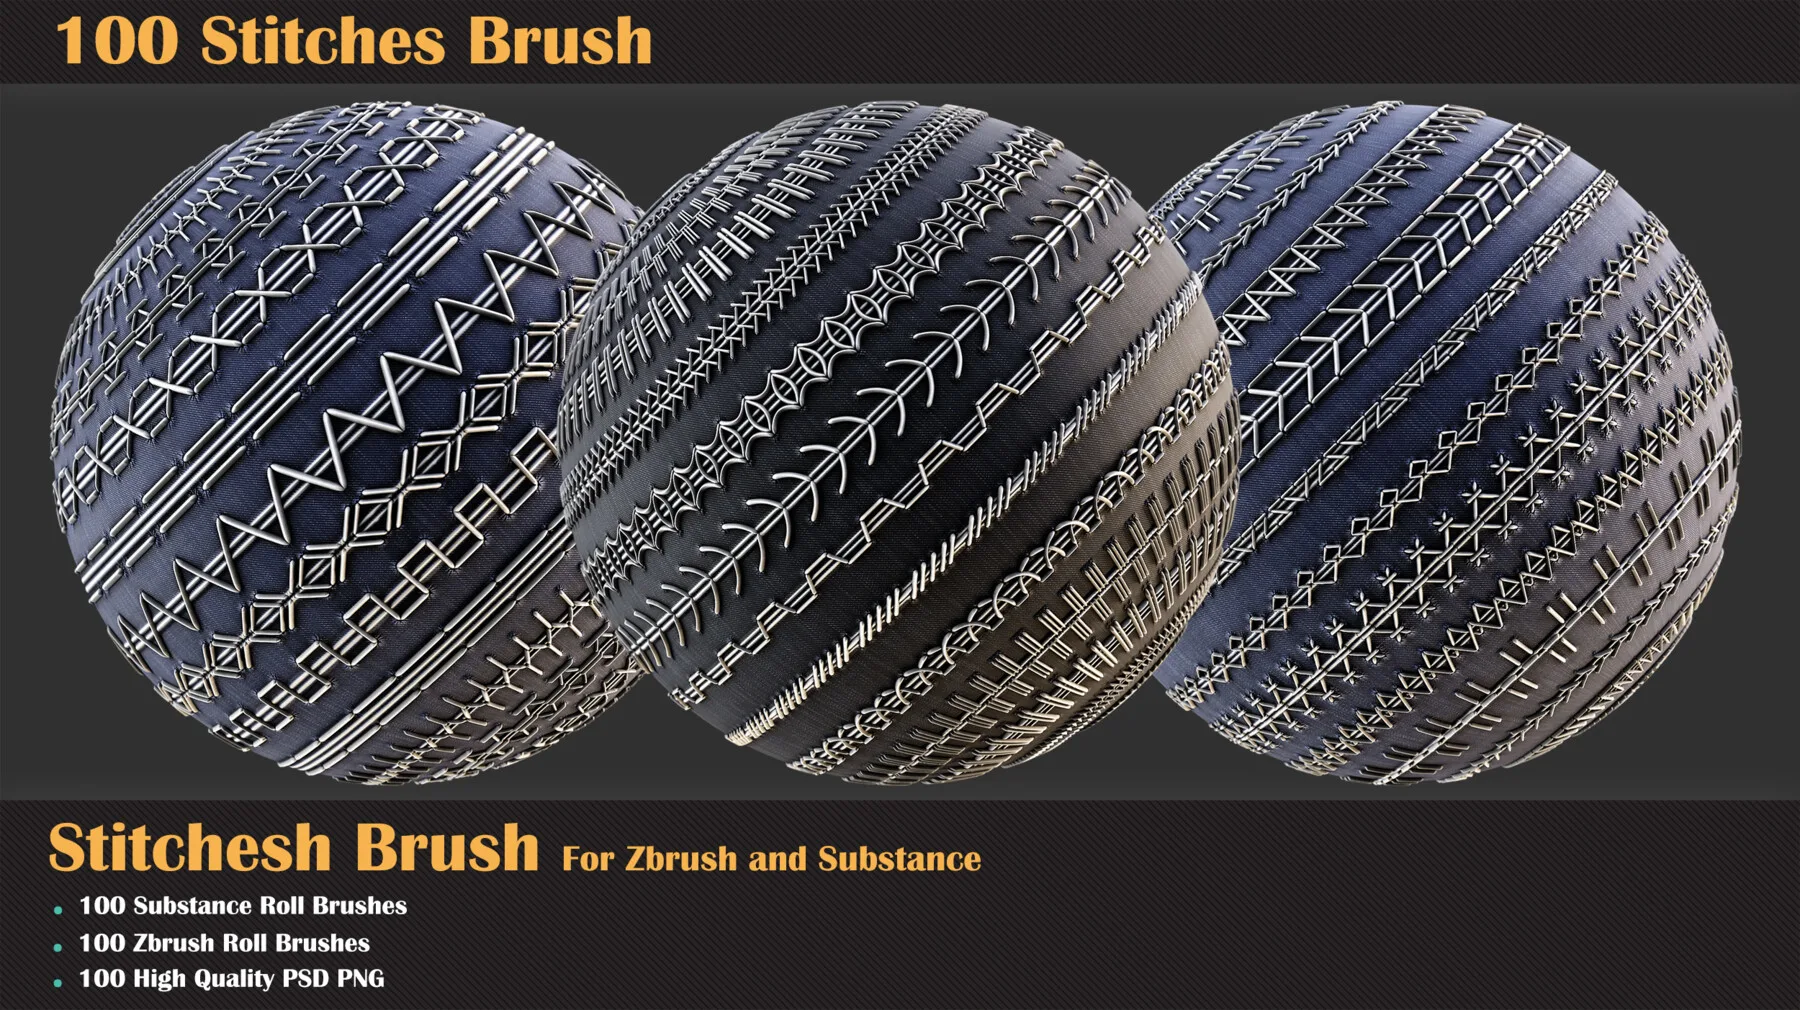 100 Stitches Brush - Substance and Zbrush